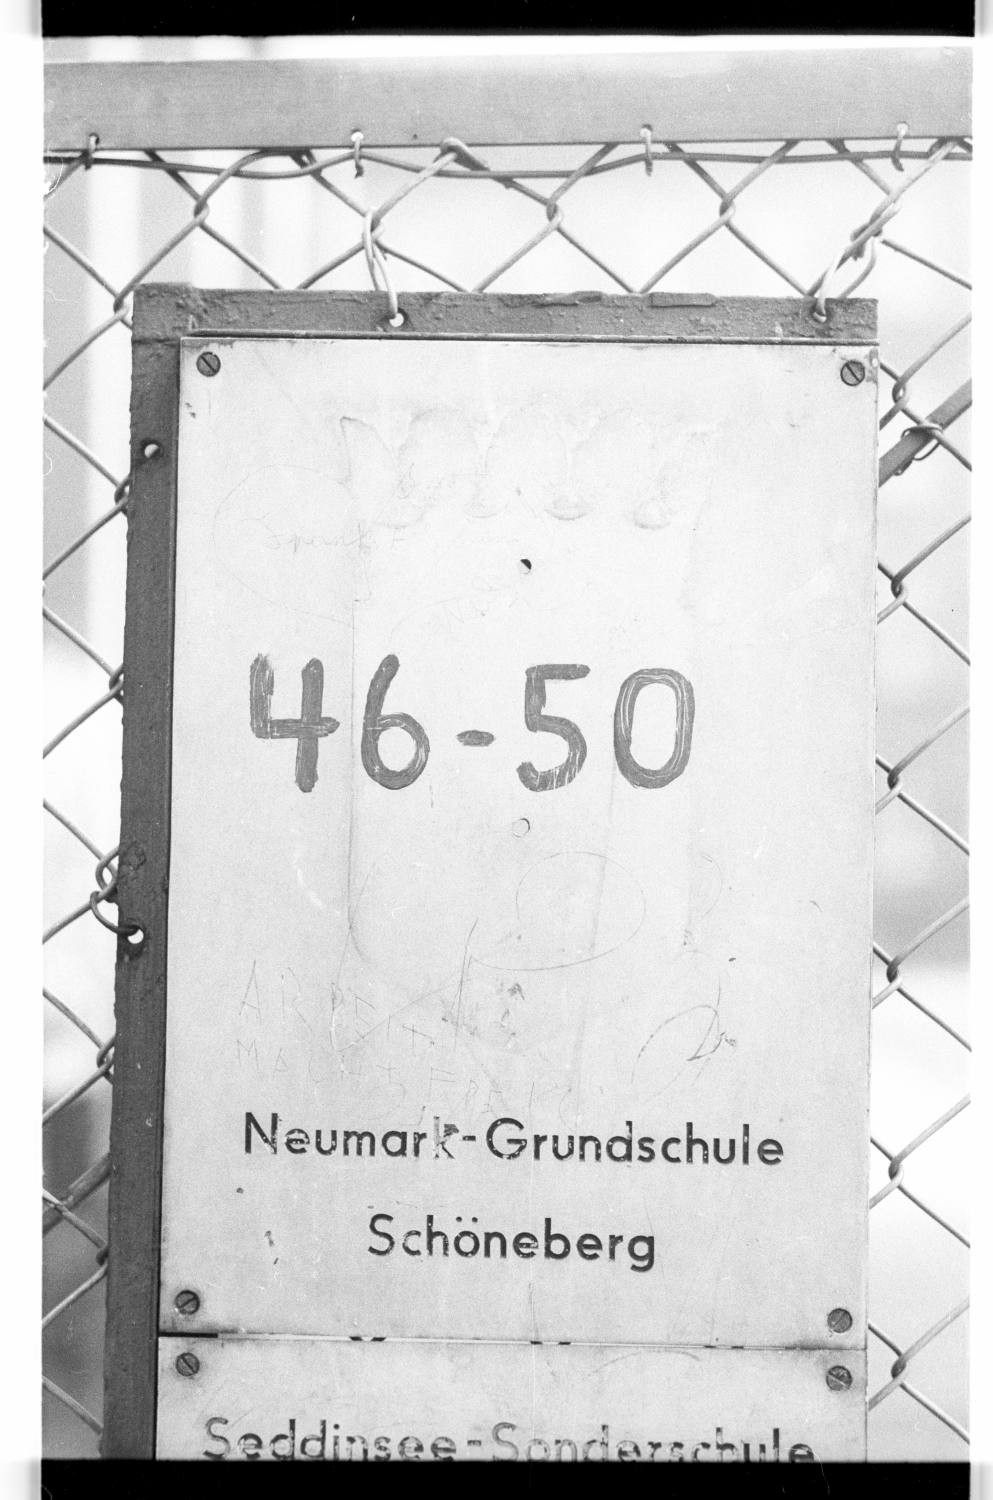 Kleinbildnegativ: Hausnummernschild, Neumark Grundschule, 1982 (Museen Tempelhof-Schöneberg/Jürgen Henschel RR-F)